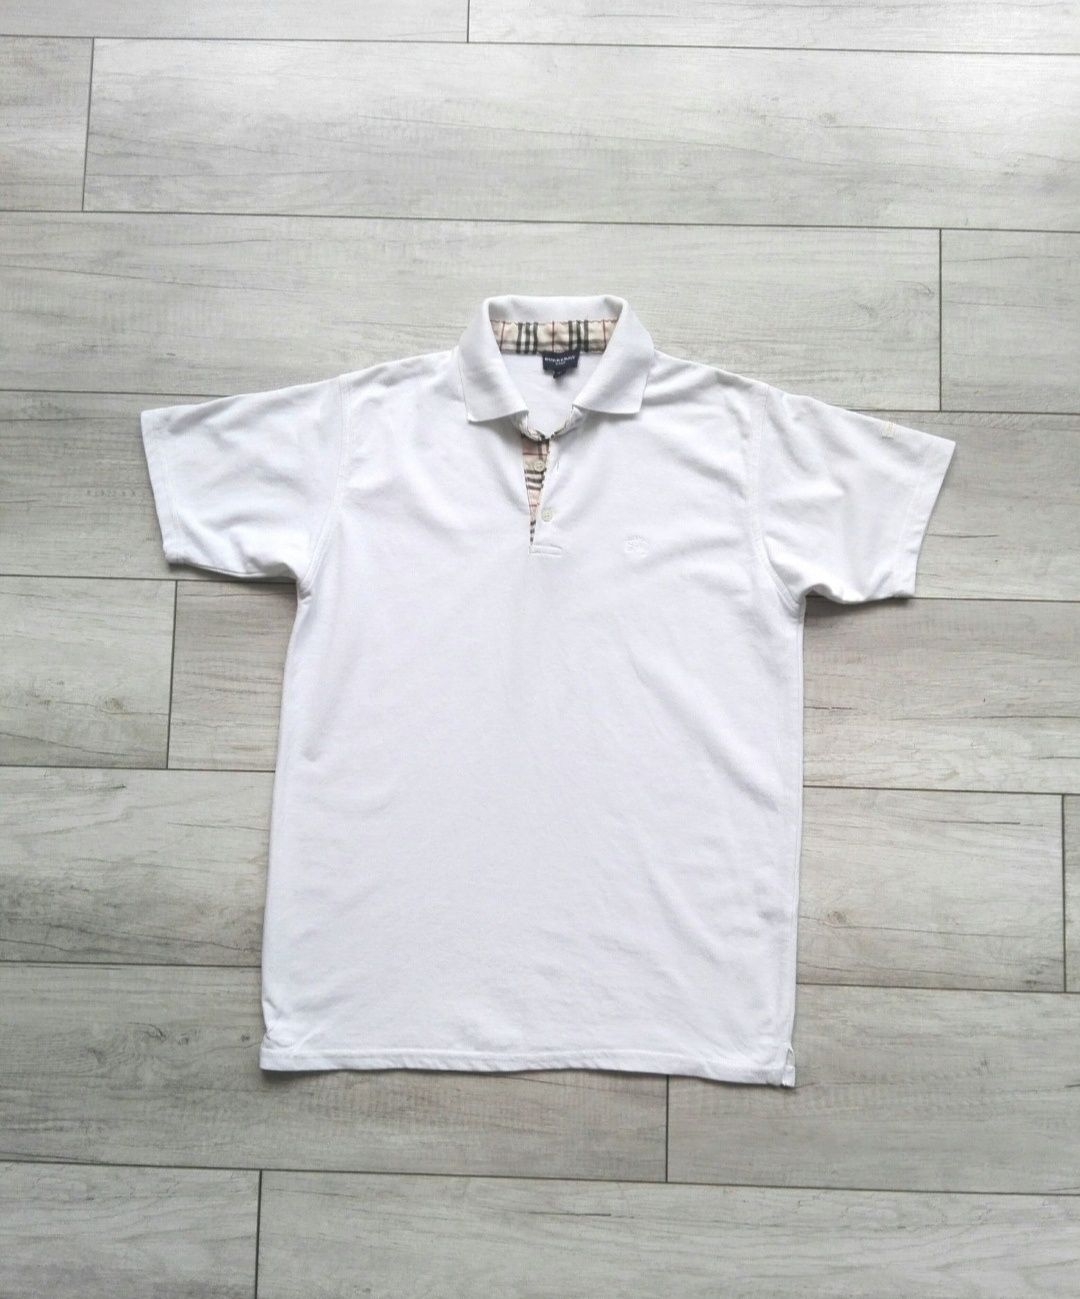 Burberry biały oryginalny t-shirt koszulka polo rozm M